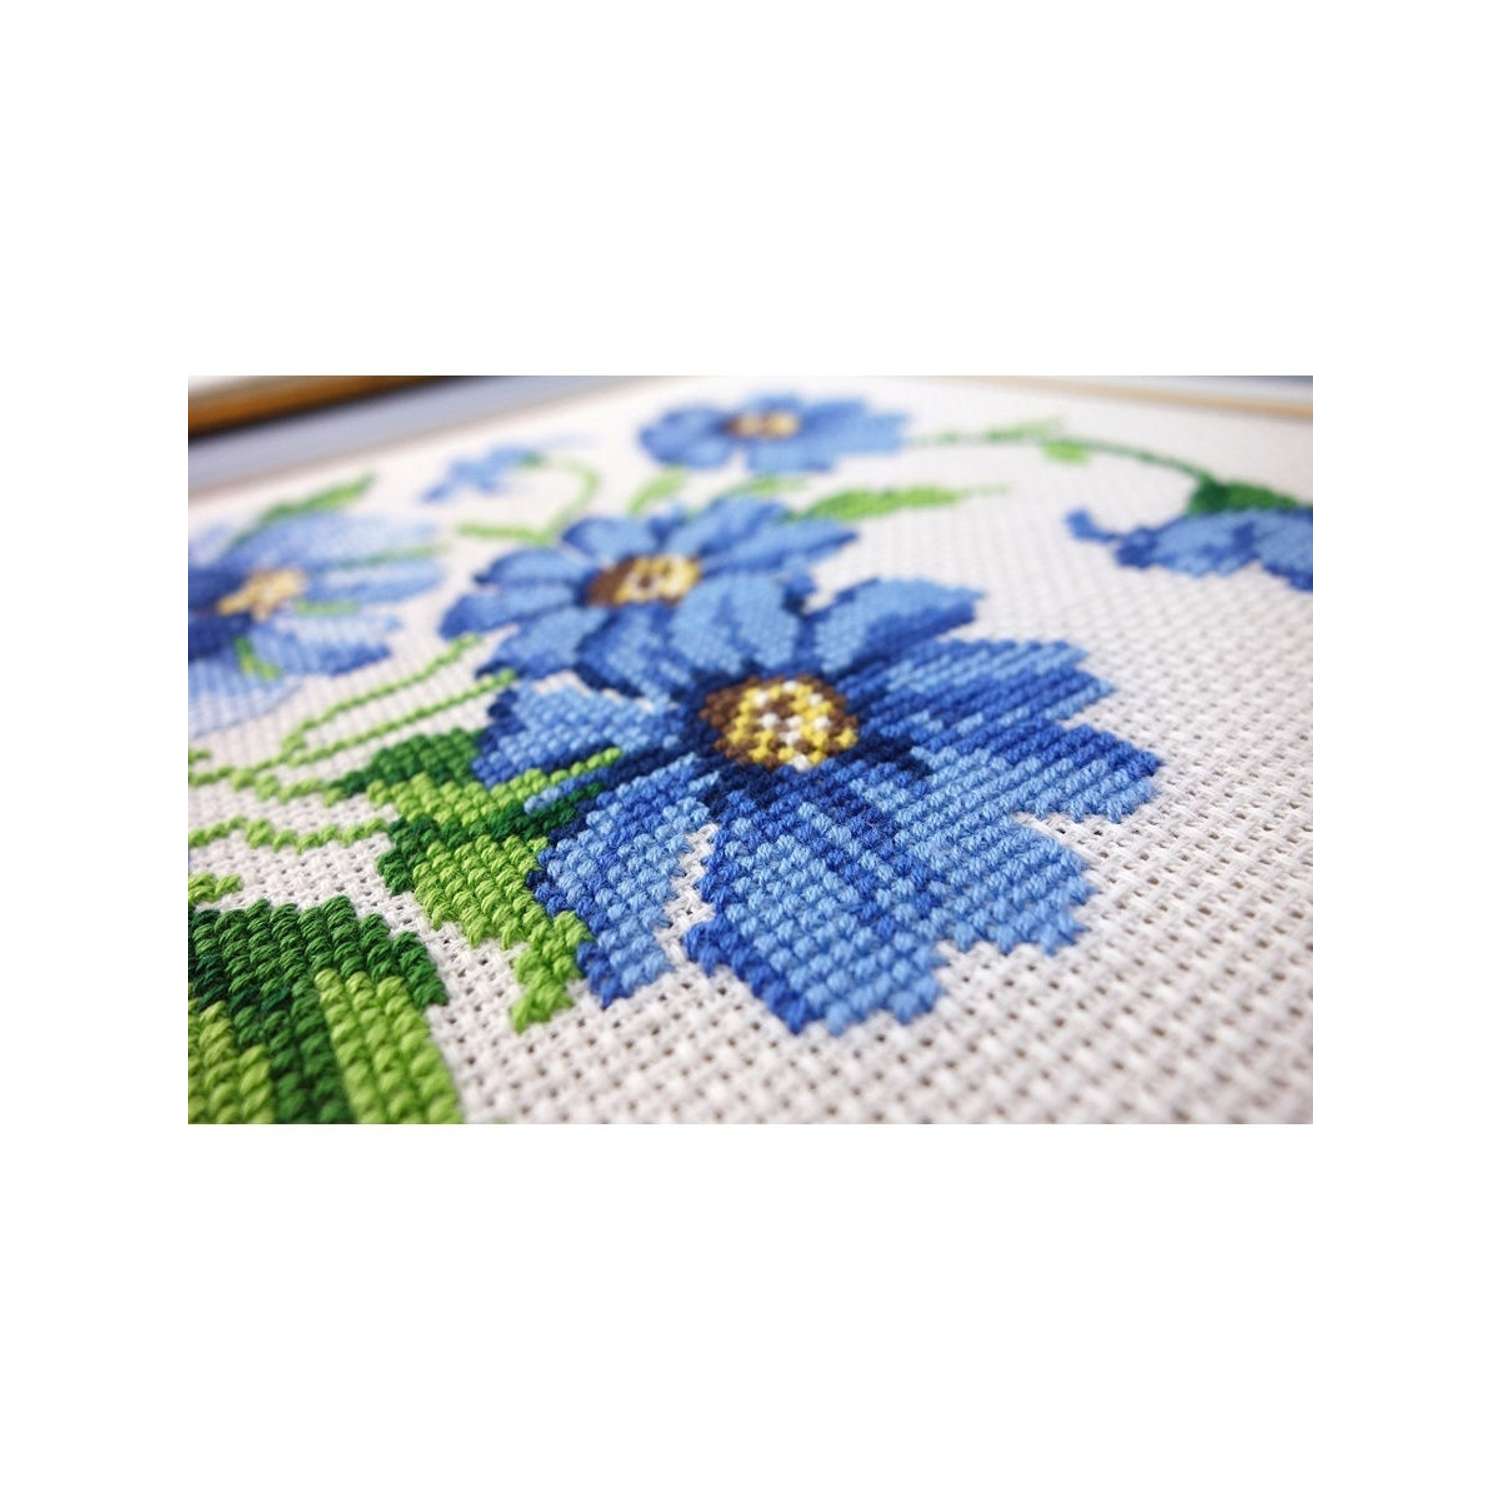 Набор для вышивания РС Студия крестом 733 (Т30) Синие цветочки 29х20см - фото 2